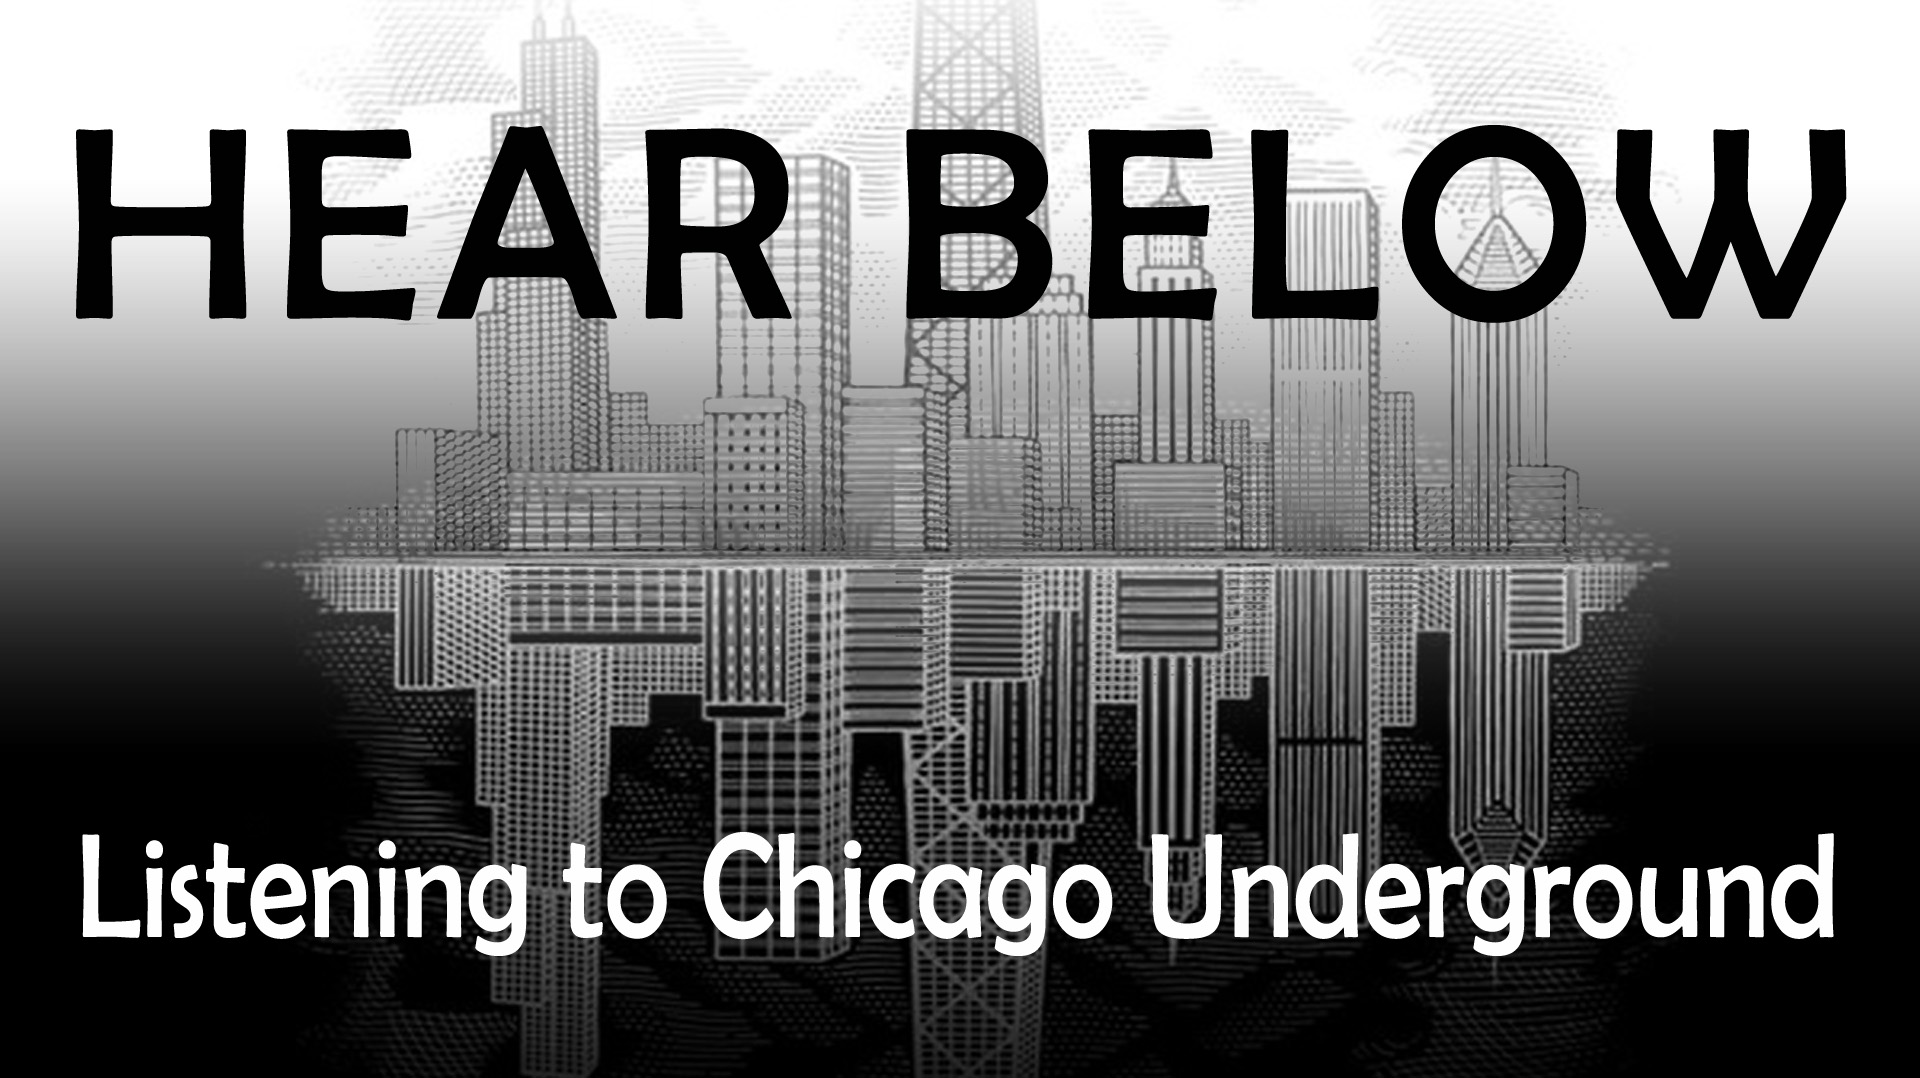 HEAR BELOW: Listening to Chicago Underground